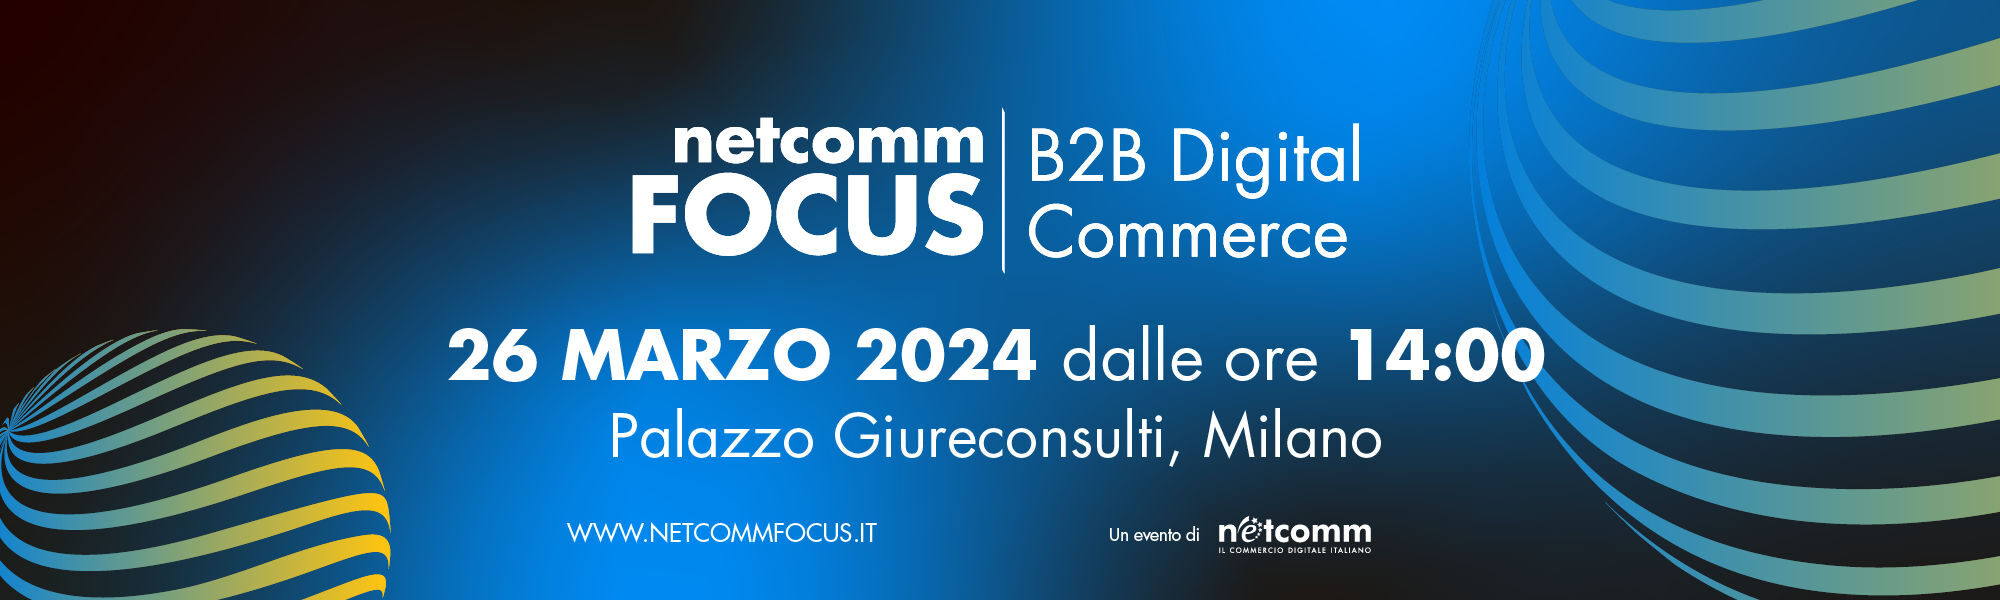 eCommerce B2B in Italia: Valore, Tecnologie e Approcci delle Imprese con un focus sui modelli di proprio B2B Store